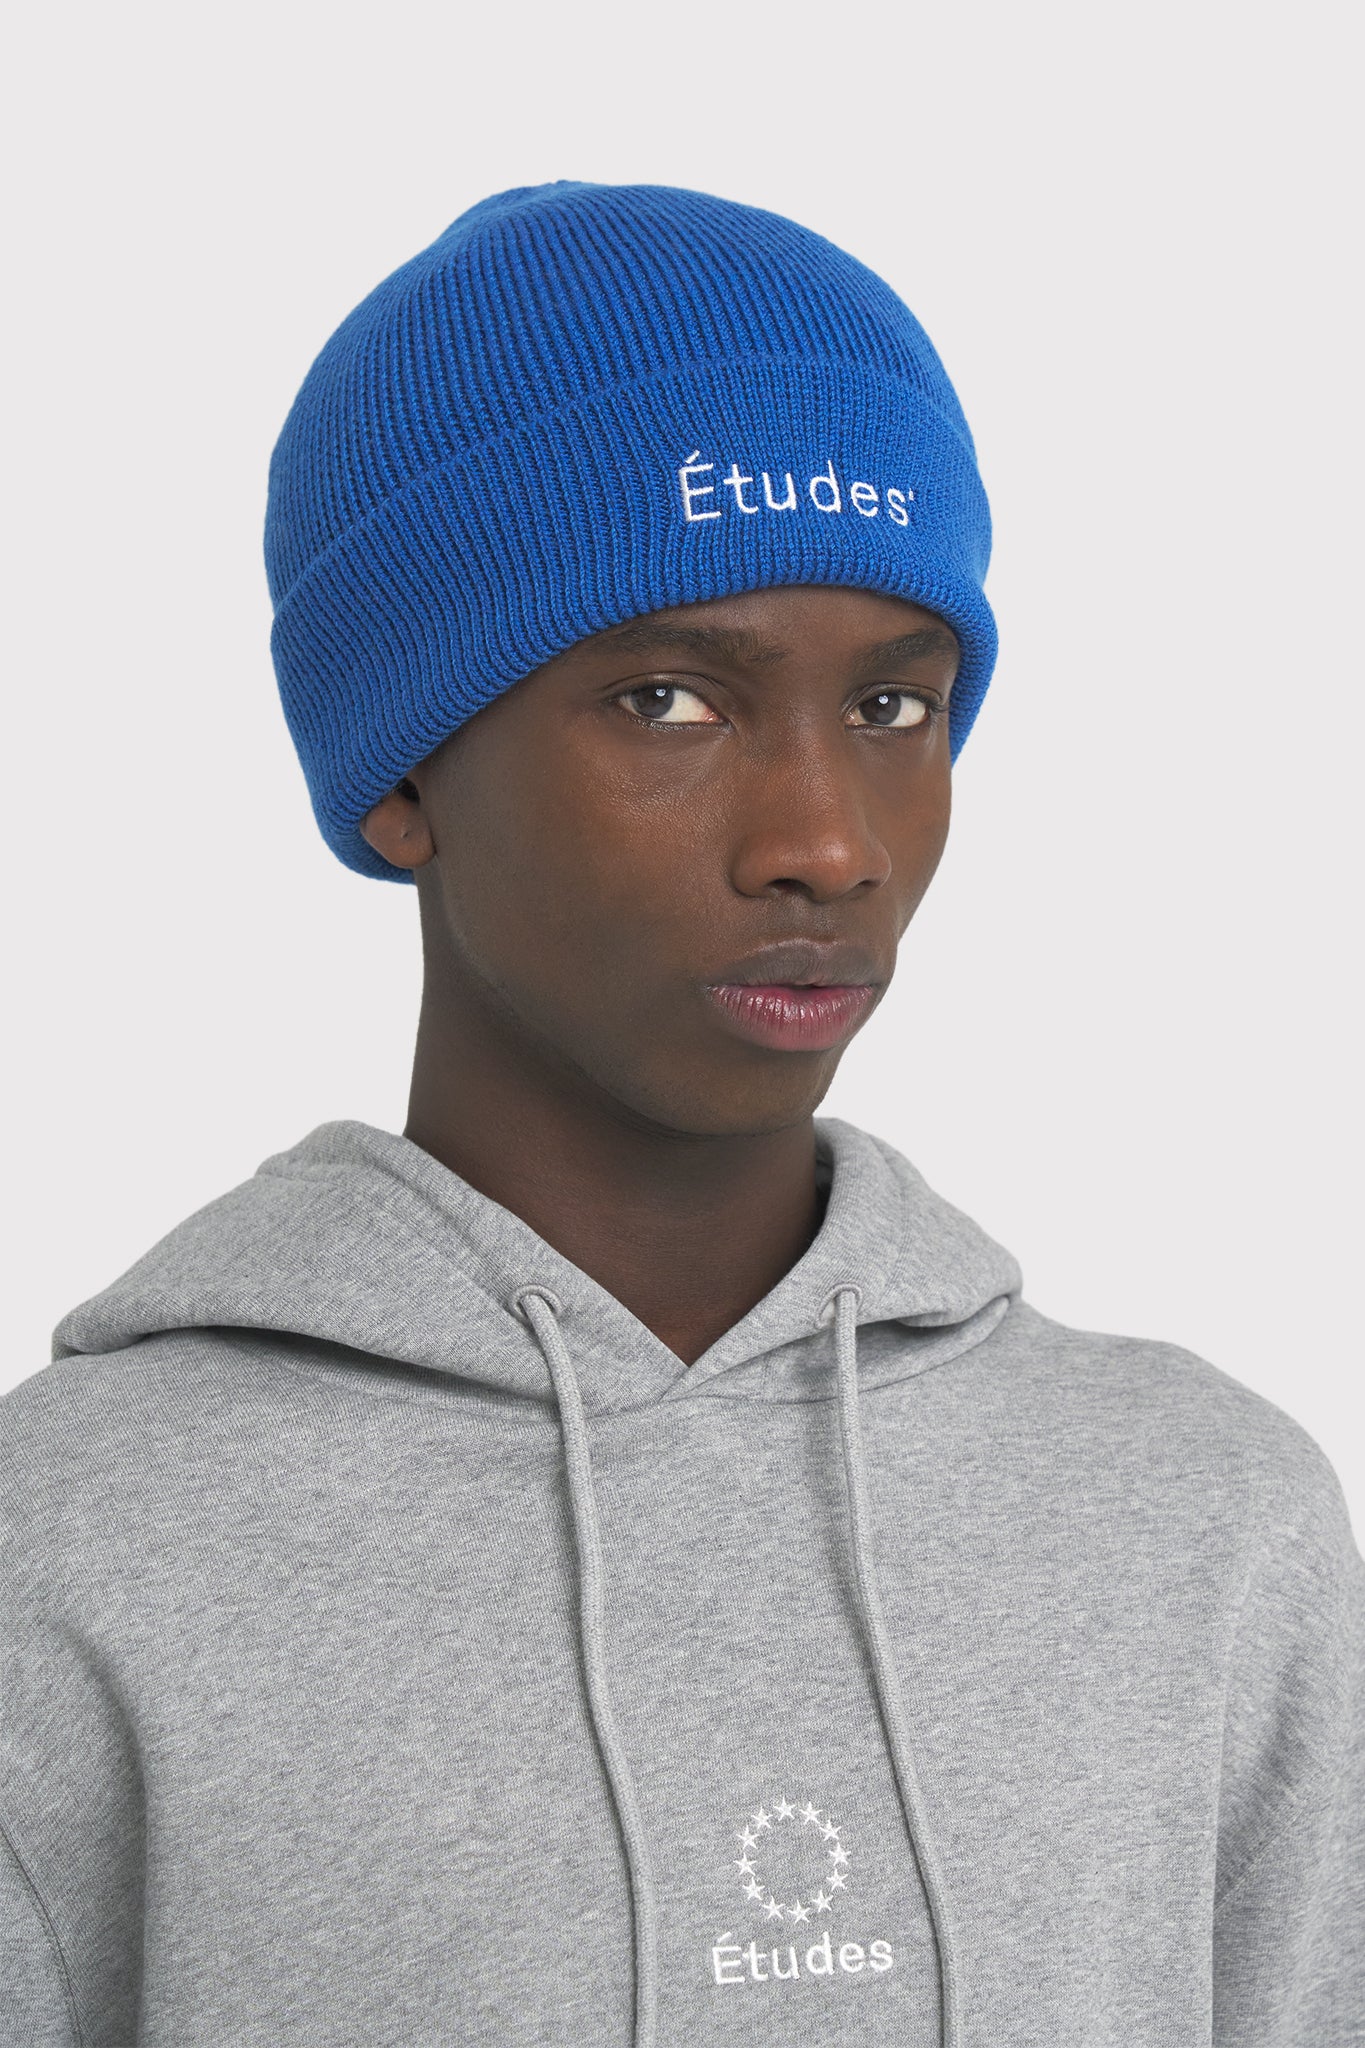 ÉTUDES BEANIE ETUDES BLUE HATS 2